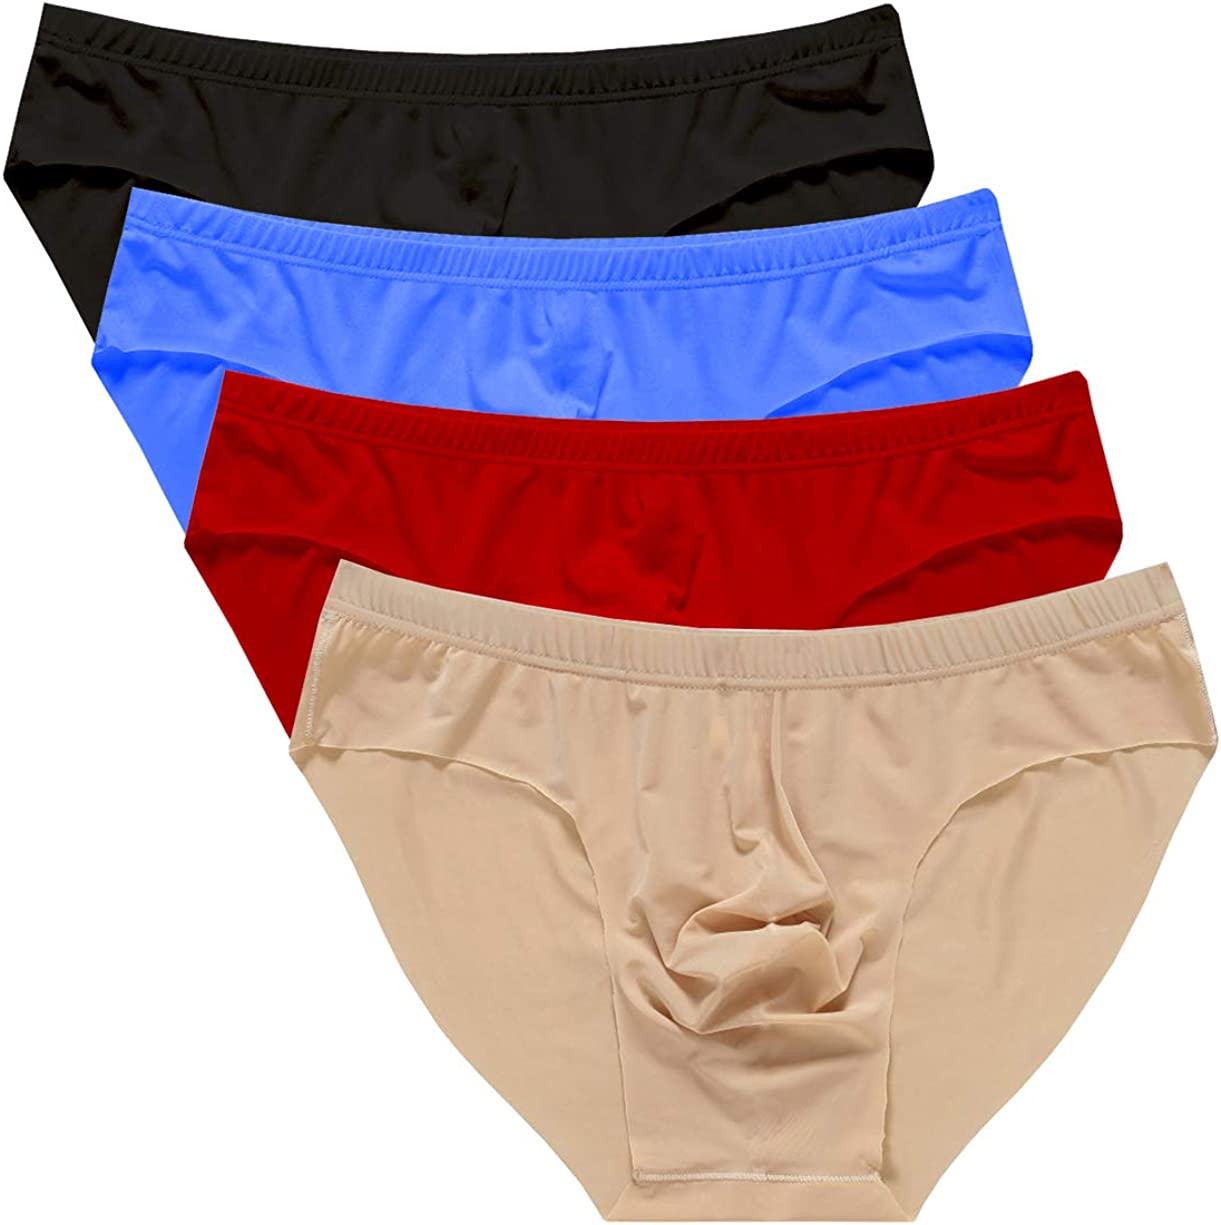 Naturemore Men's Underwear Low Waist Seamless Ice Silk Sexy 3 Pack